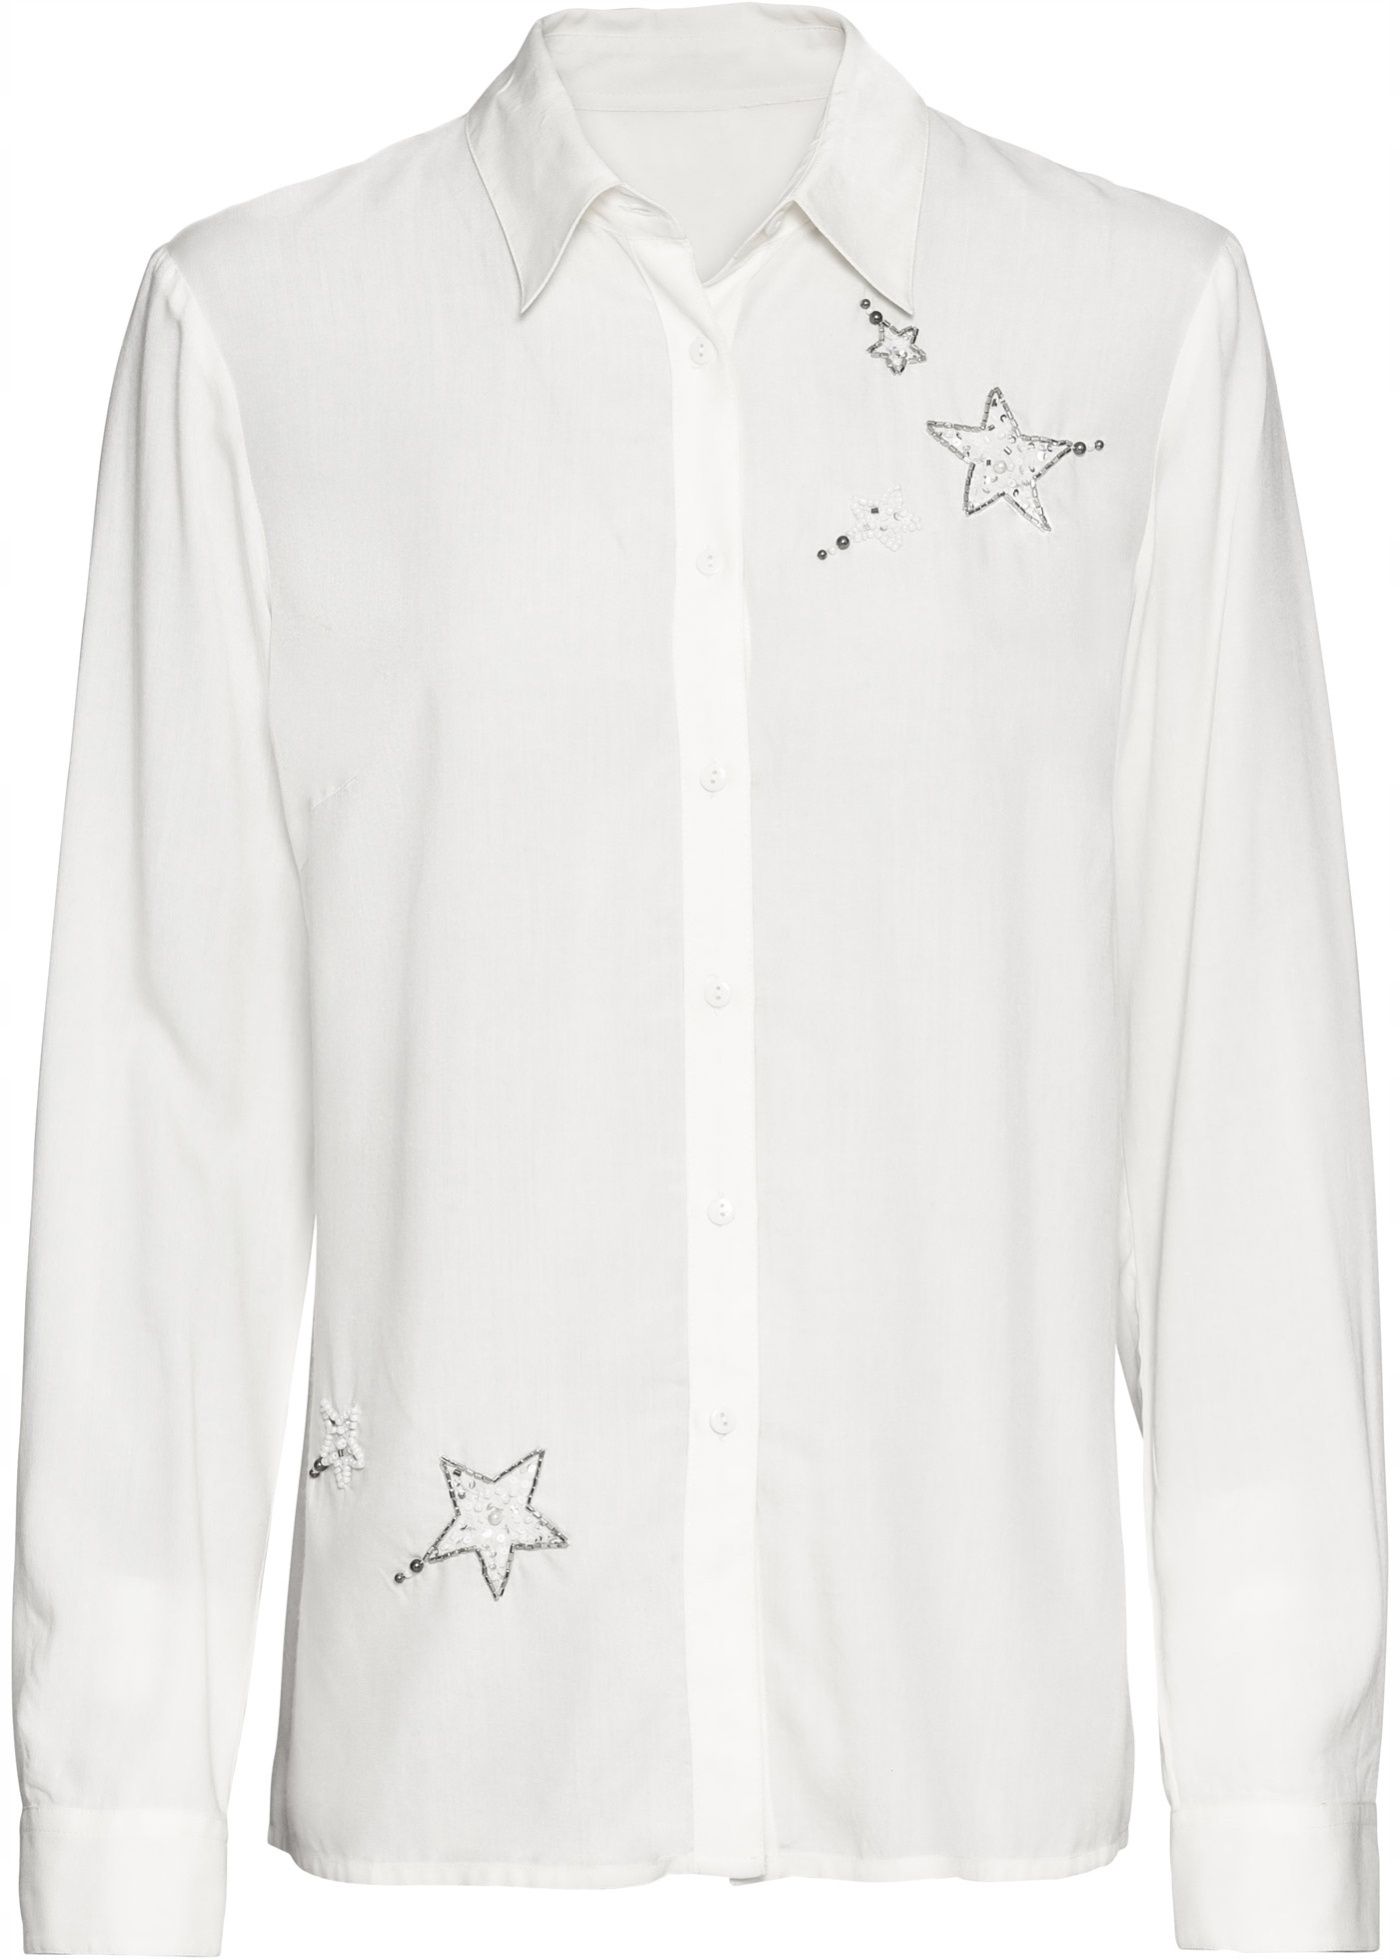 B.P.C biała koszula z ozdobą z koralików 40.